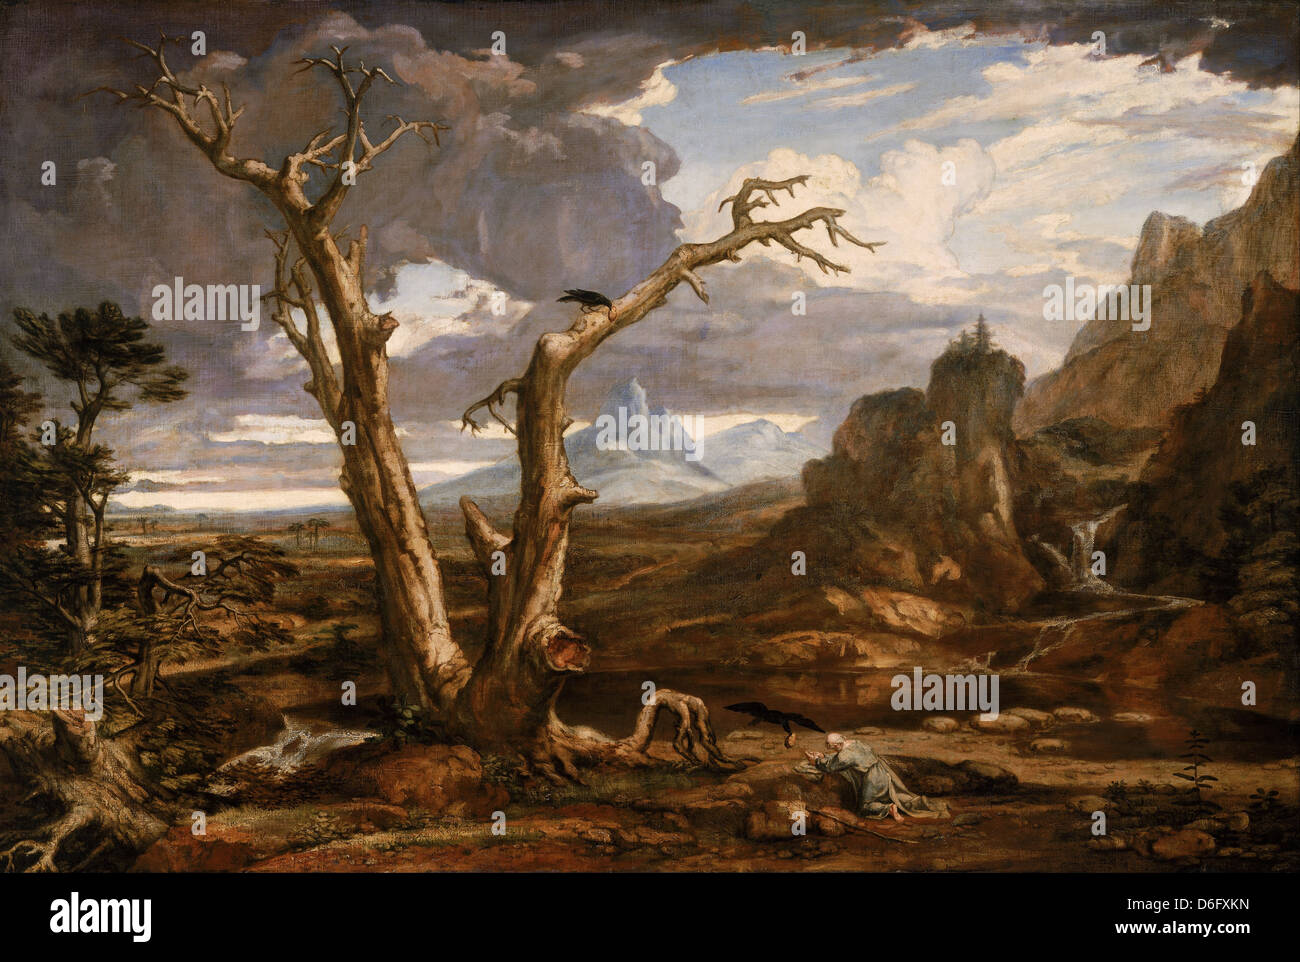 Washington Allston, Élie dans le désert, 1818 huile sur toile. Musée des beaux-arts de Boston, Massachusetts Banque D'Images